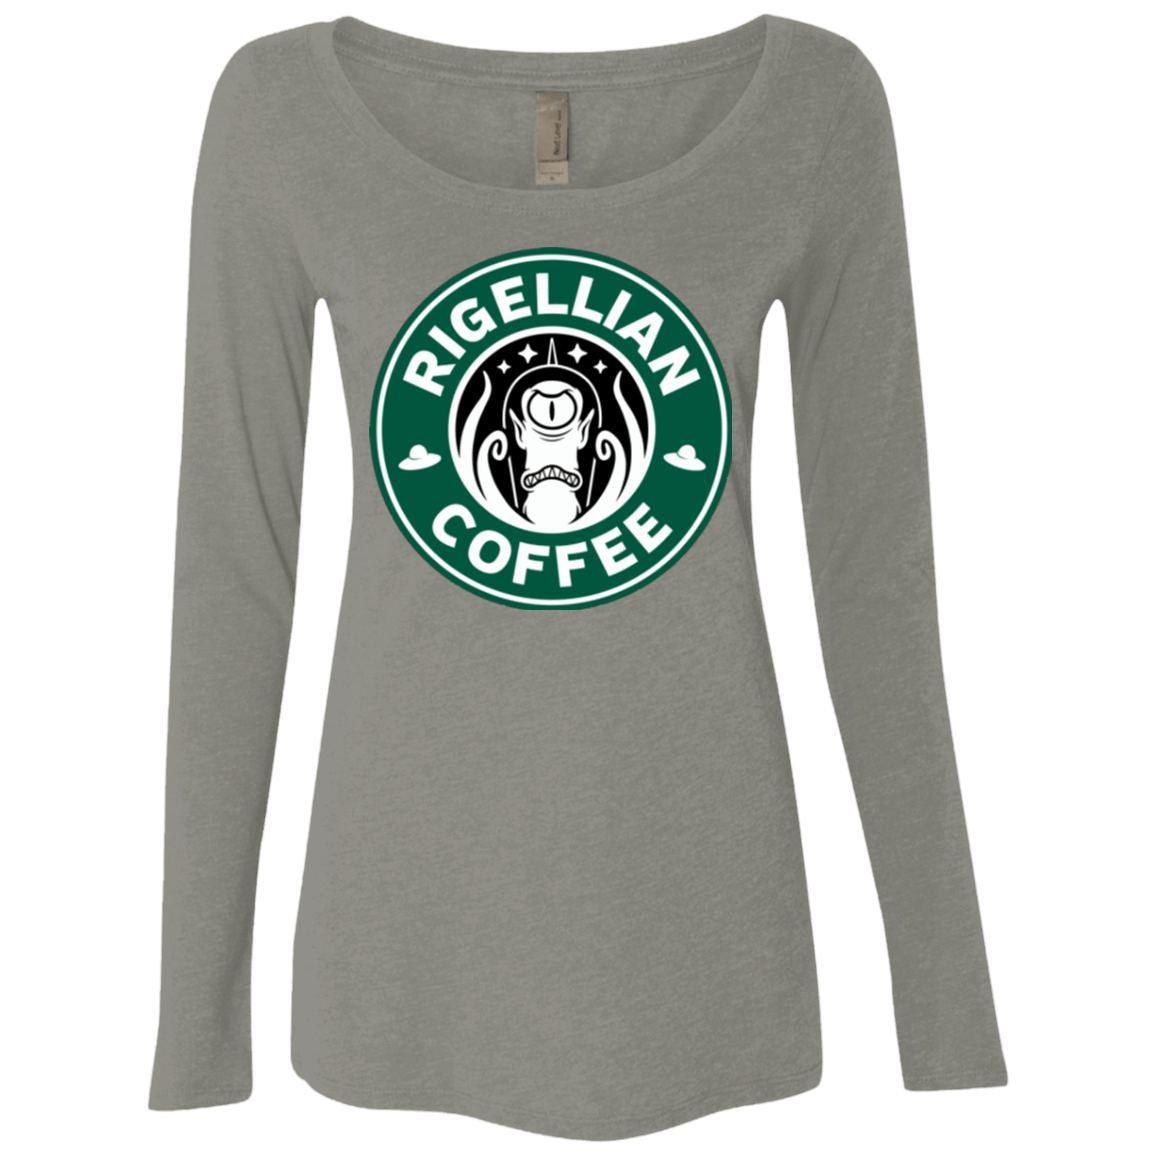 T-Shirts Venetian Grey / Small Rigellian Coffee Women's Triblend Long Sleeve Shirt